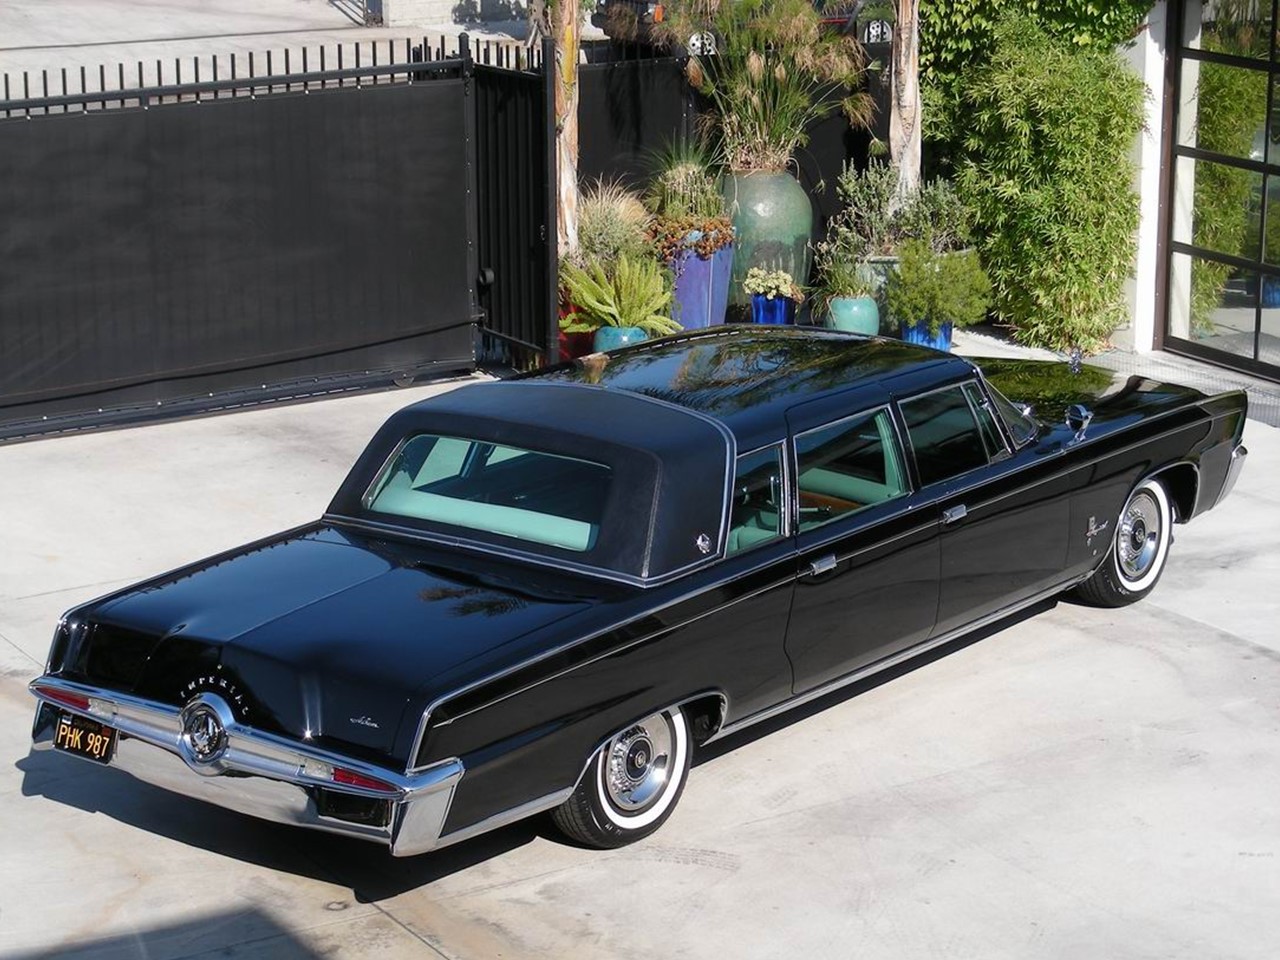 Crown Jewel: 1964 Ghia Landau Crown Imperial Limousine.